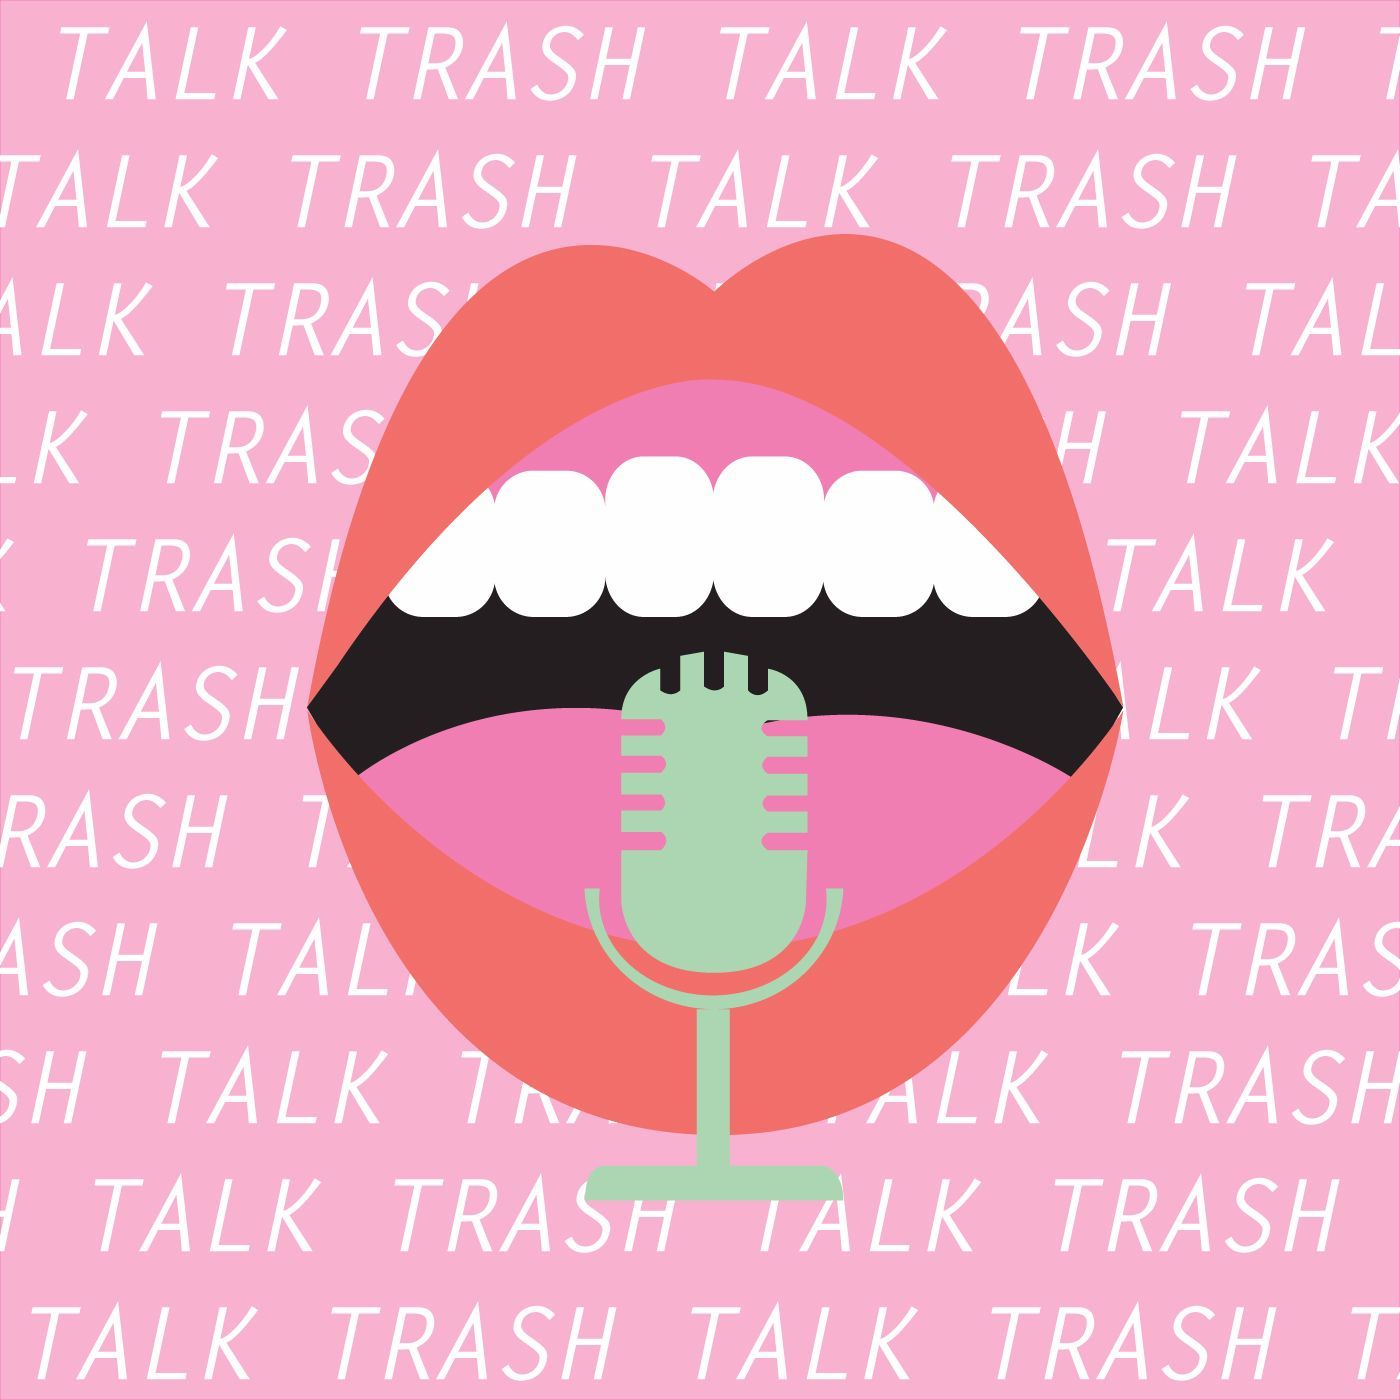 Trash Talking with Eco-Warriors Podcast, Brooklyn, NY